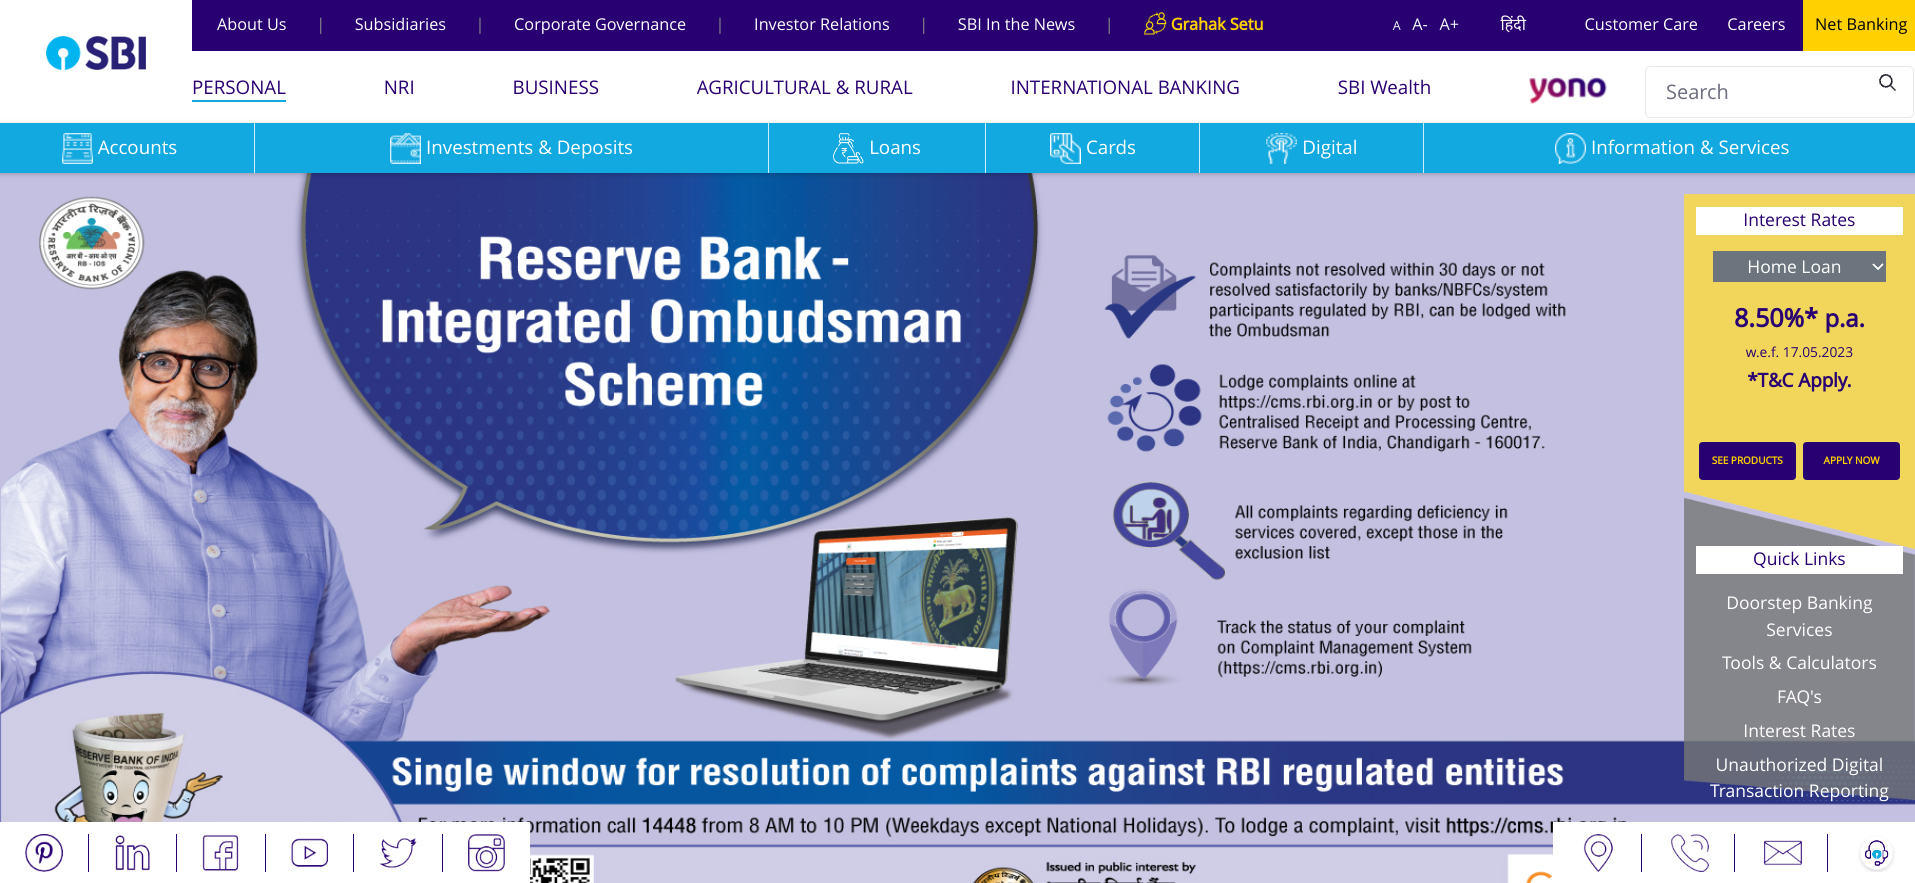 SBI Website Homepage